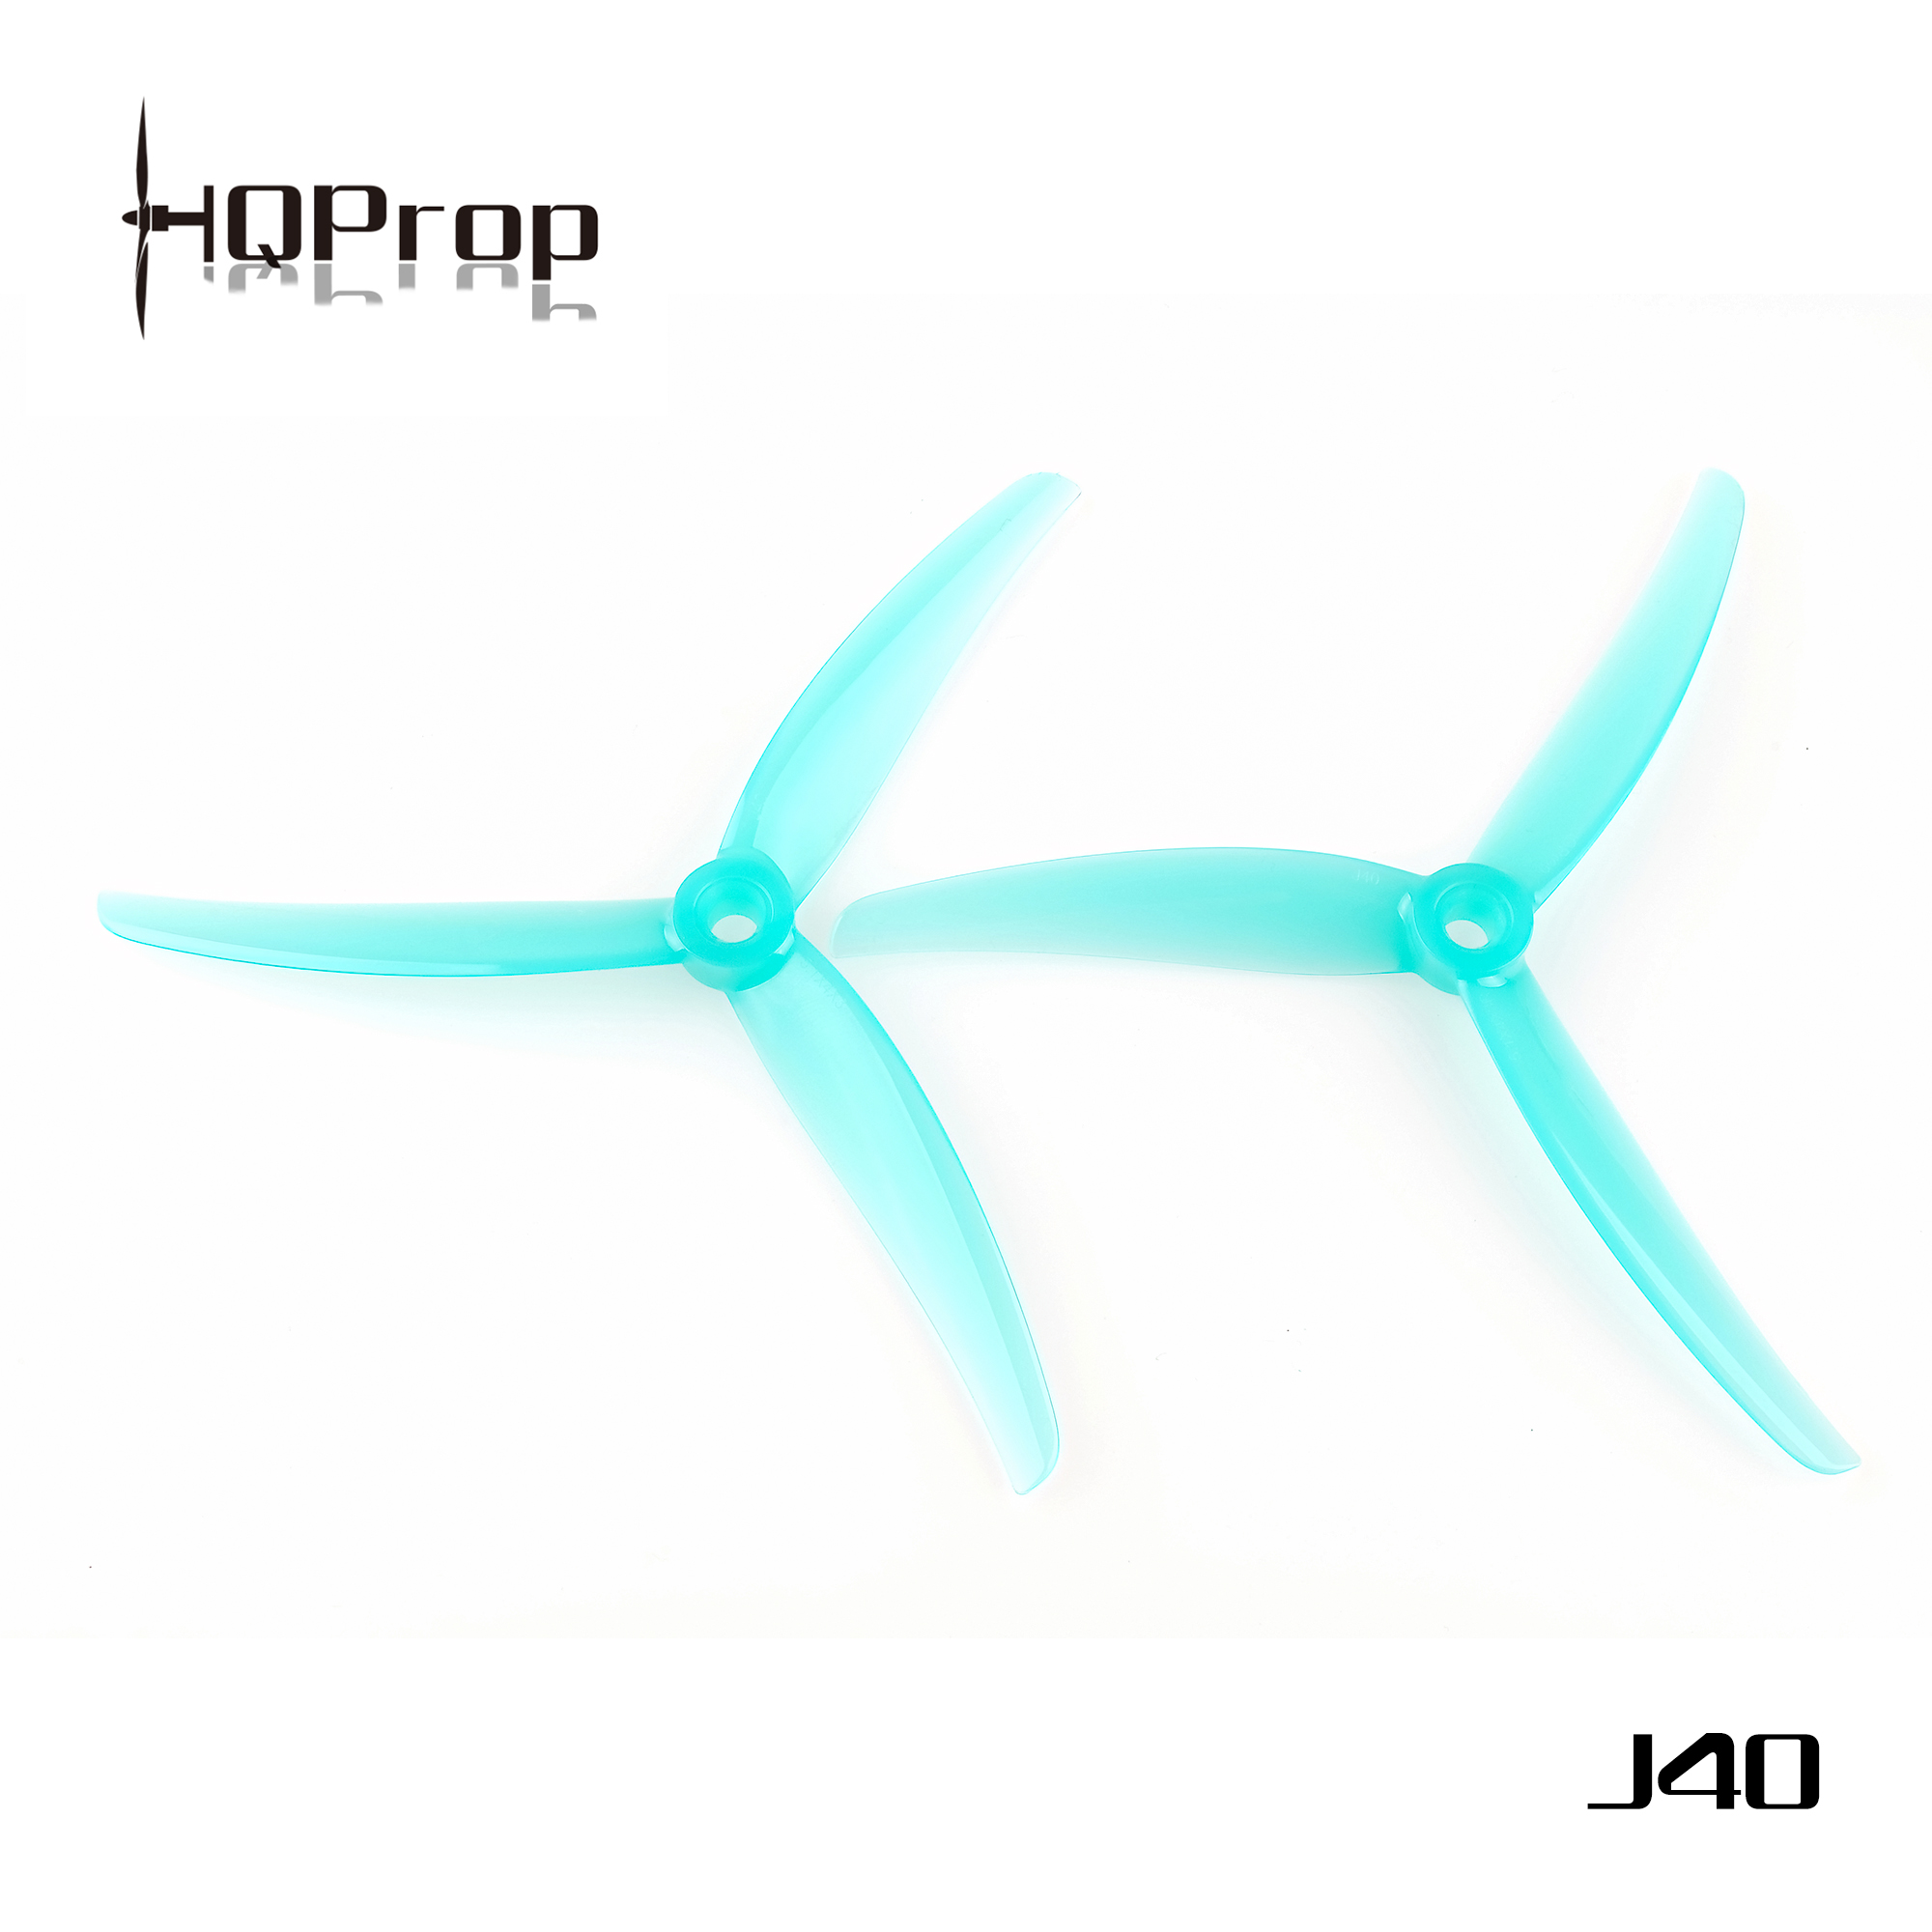 hq juicy prop,hq j40 propeller